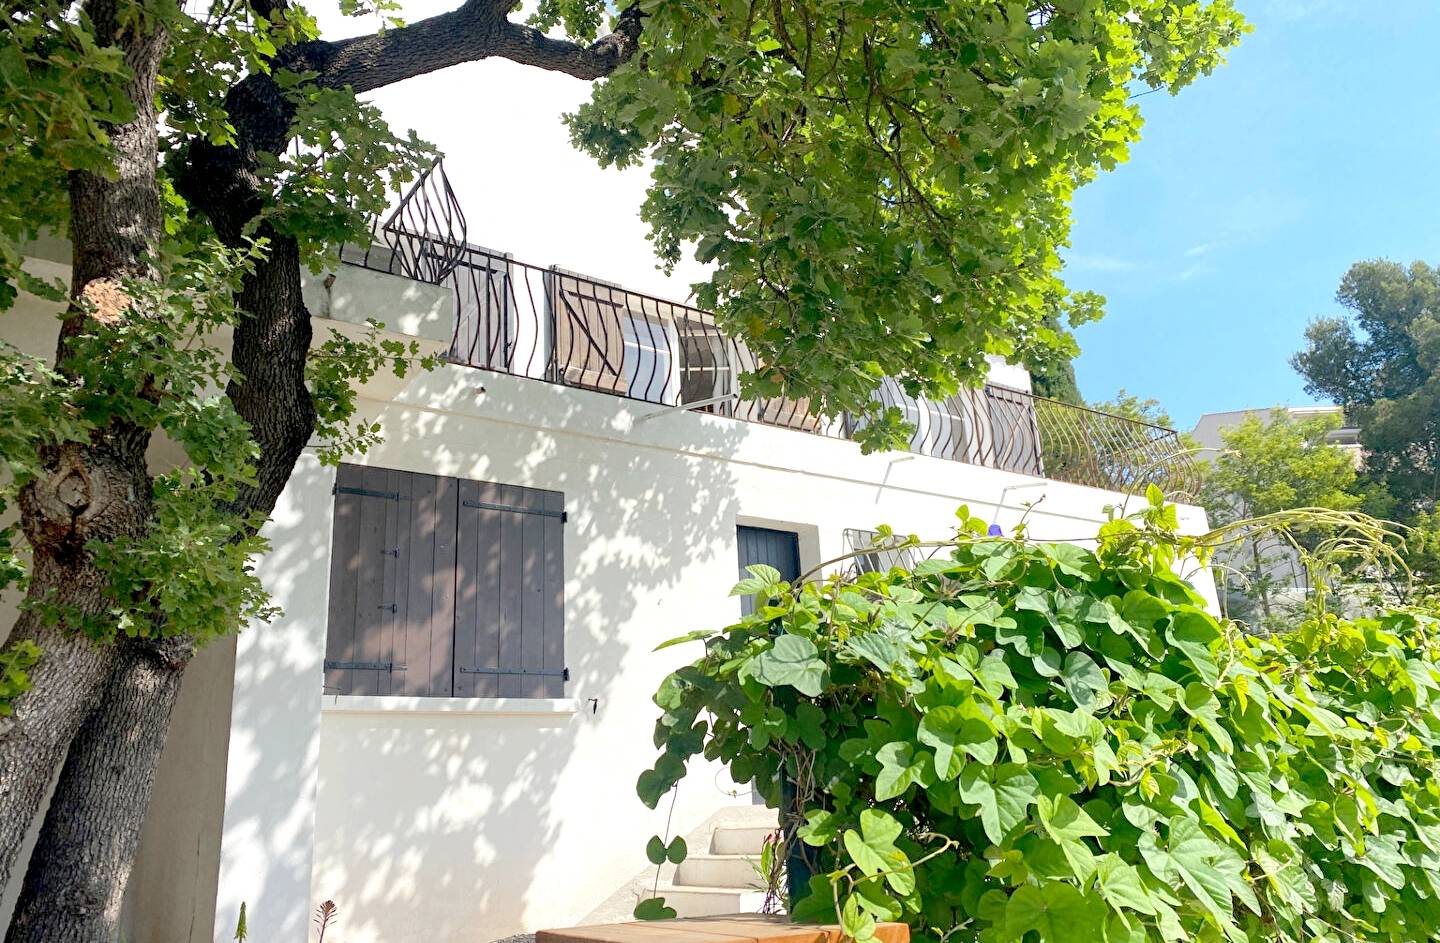 Maison traditionnelle avec parcelle de terrain à vendre quartier la Serinette à Toulon